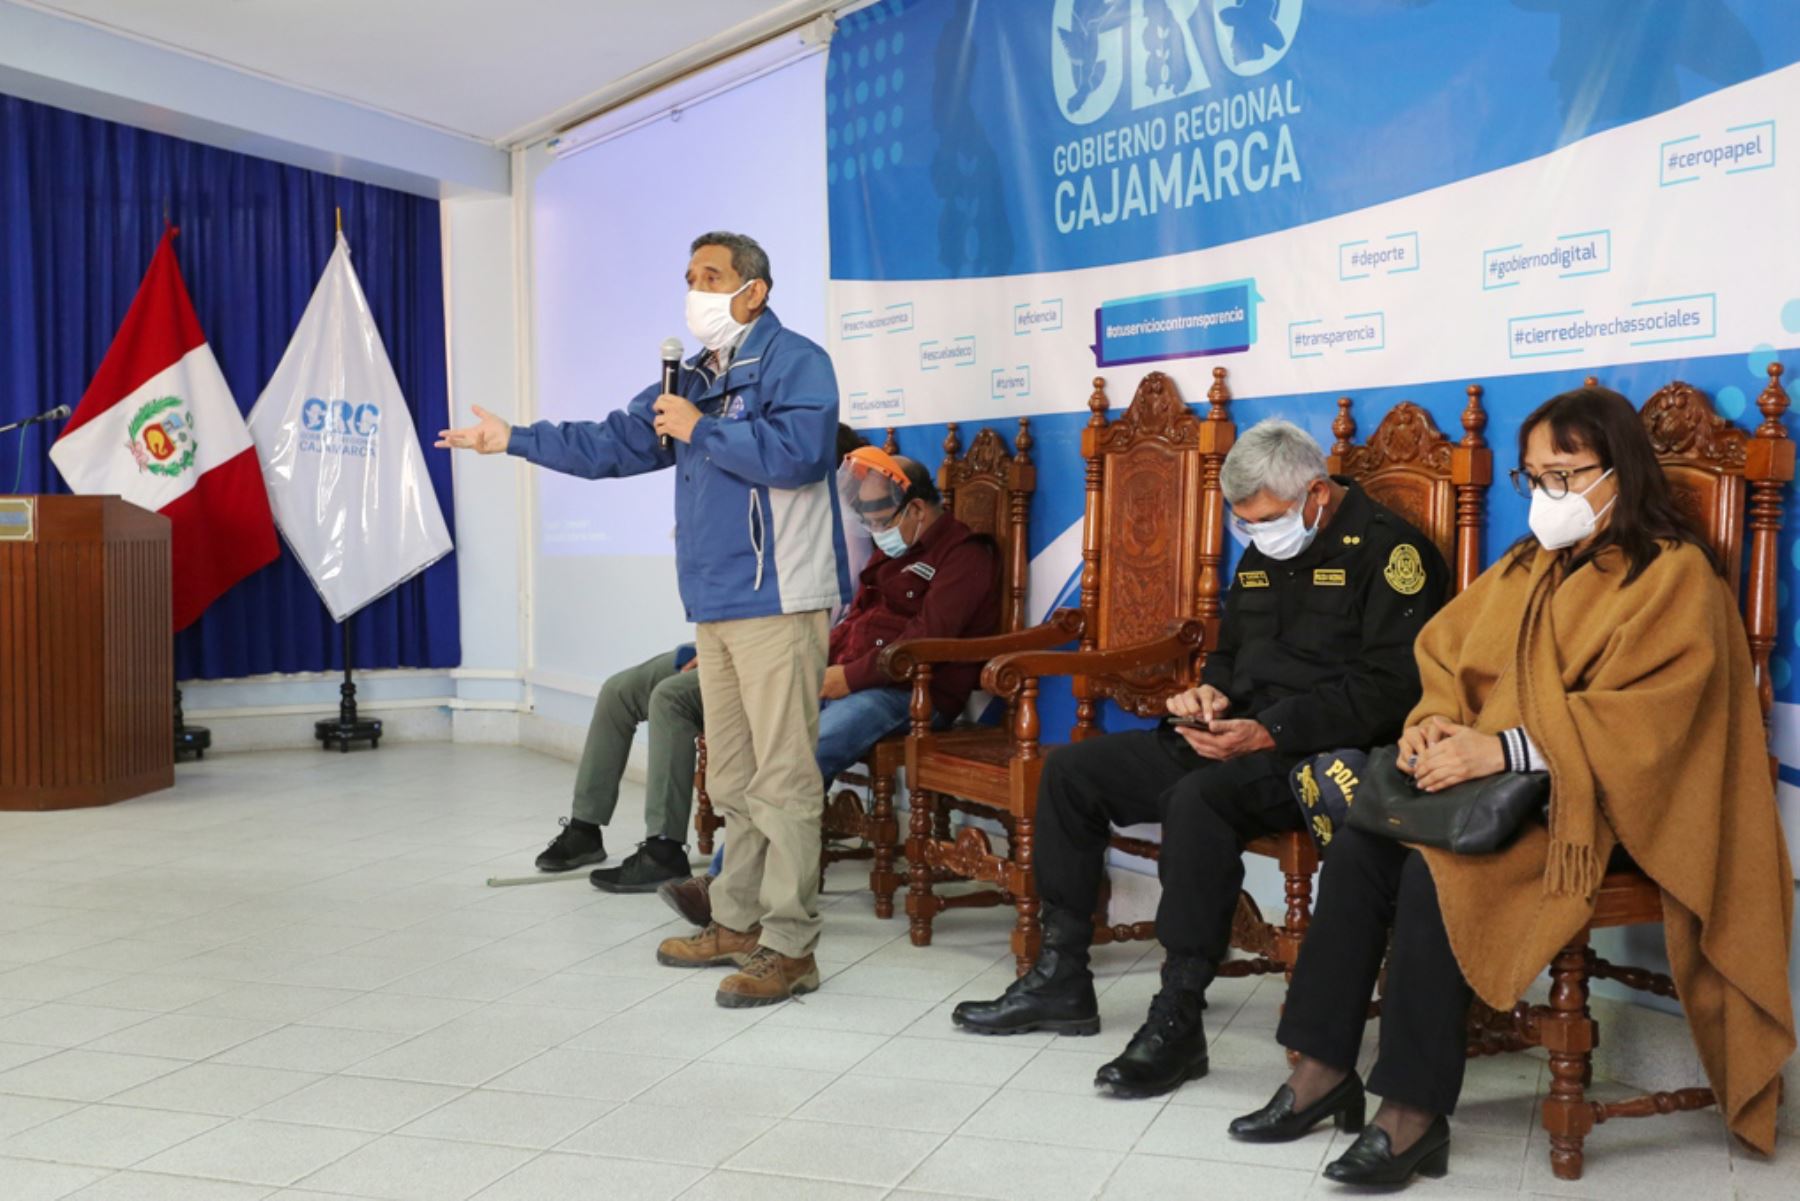 Las autoridades de Cajamarca solicitaron al Gobierno mantener la cuarentena en esta región debido al crecimiento de contagios del covid-19. Foto: Cortesía Eduard Lozano Julca